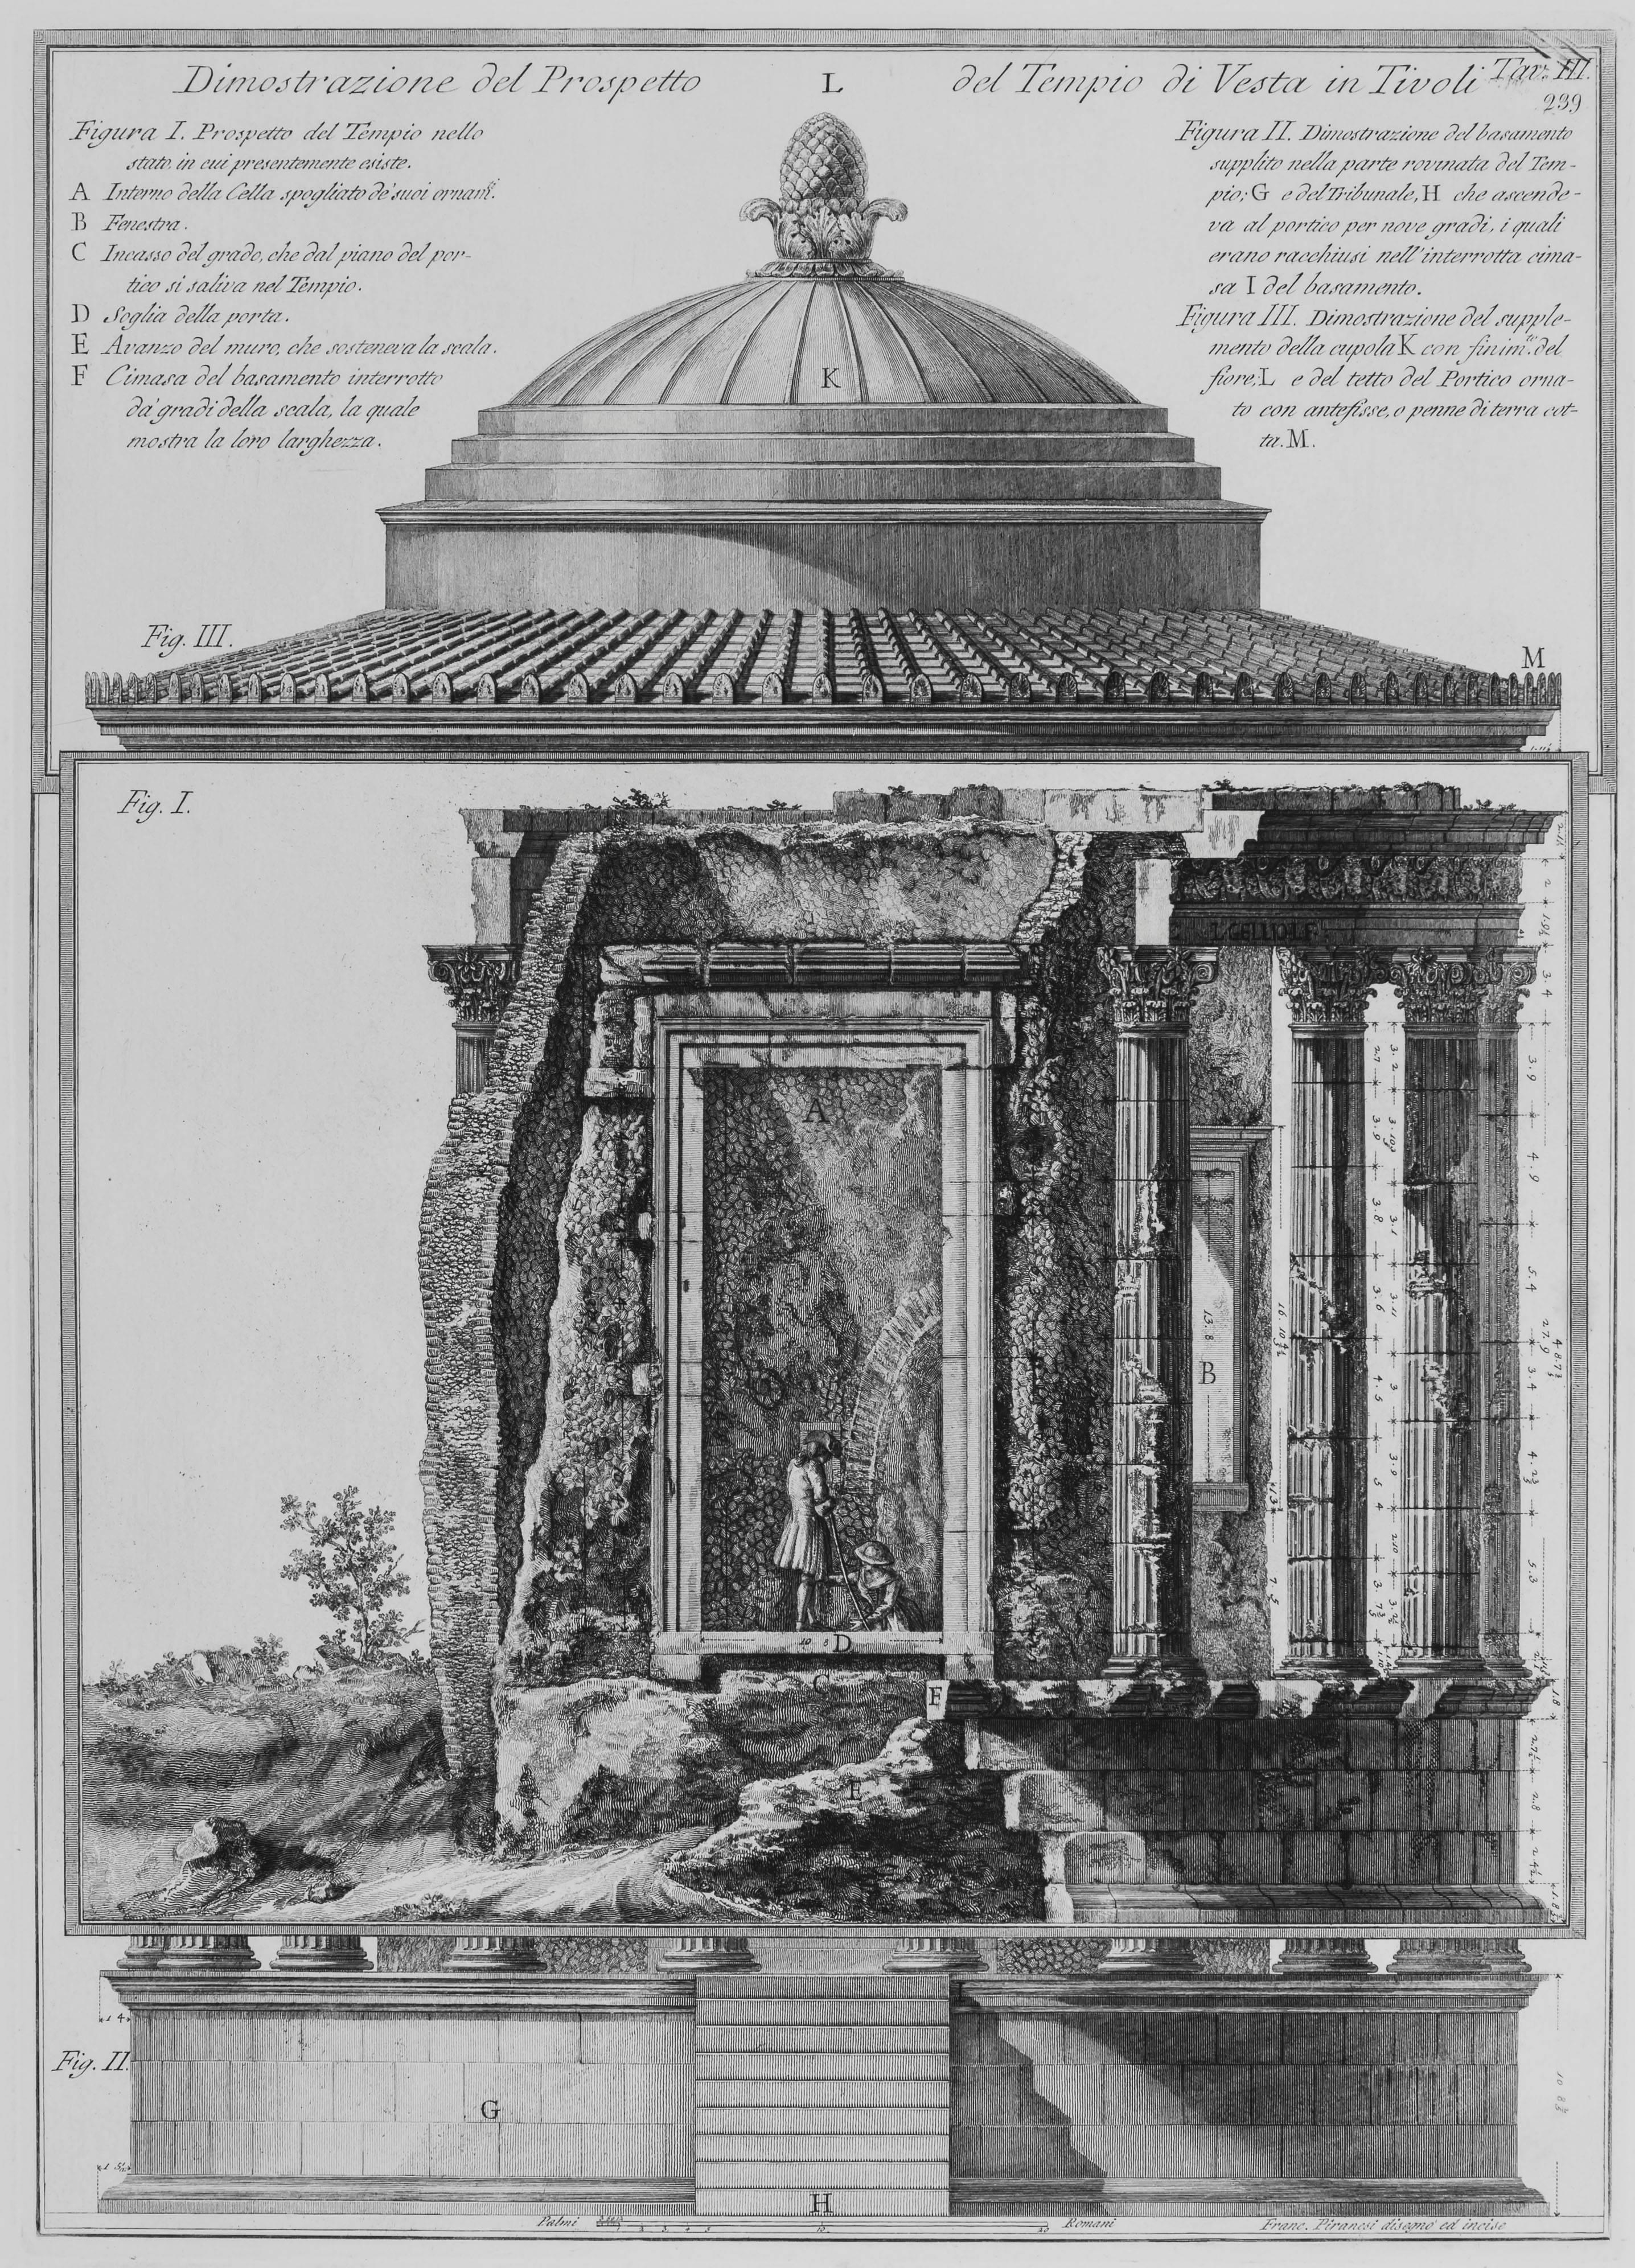 Giovanni Battista Piranesi Landscape Print - Temple of Vesta in Tivoli - Front View